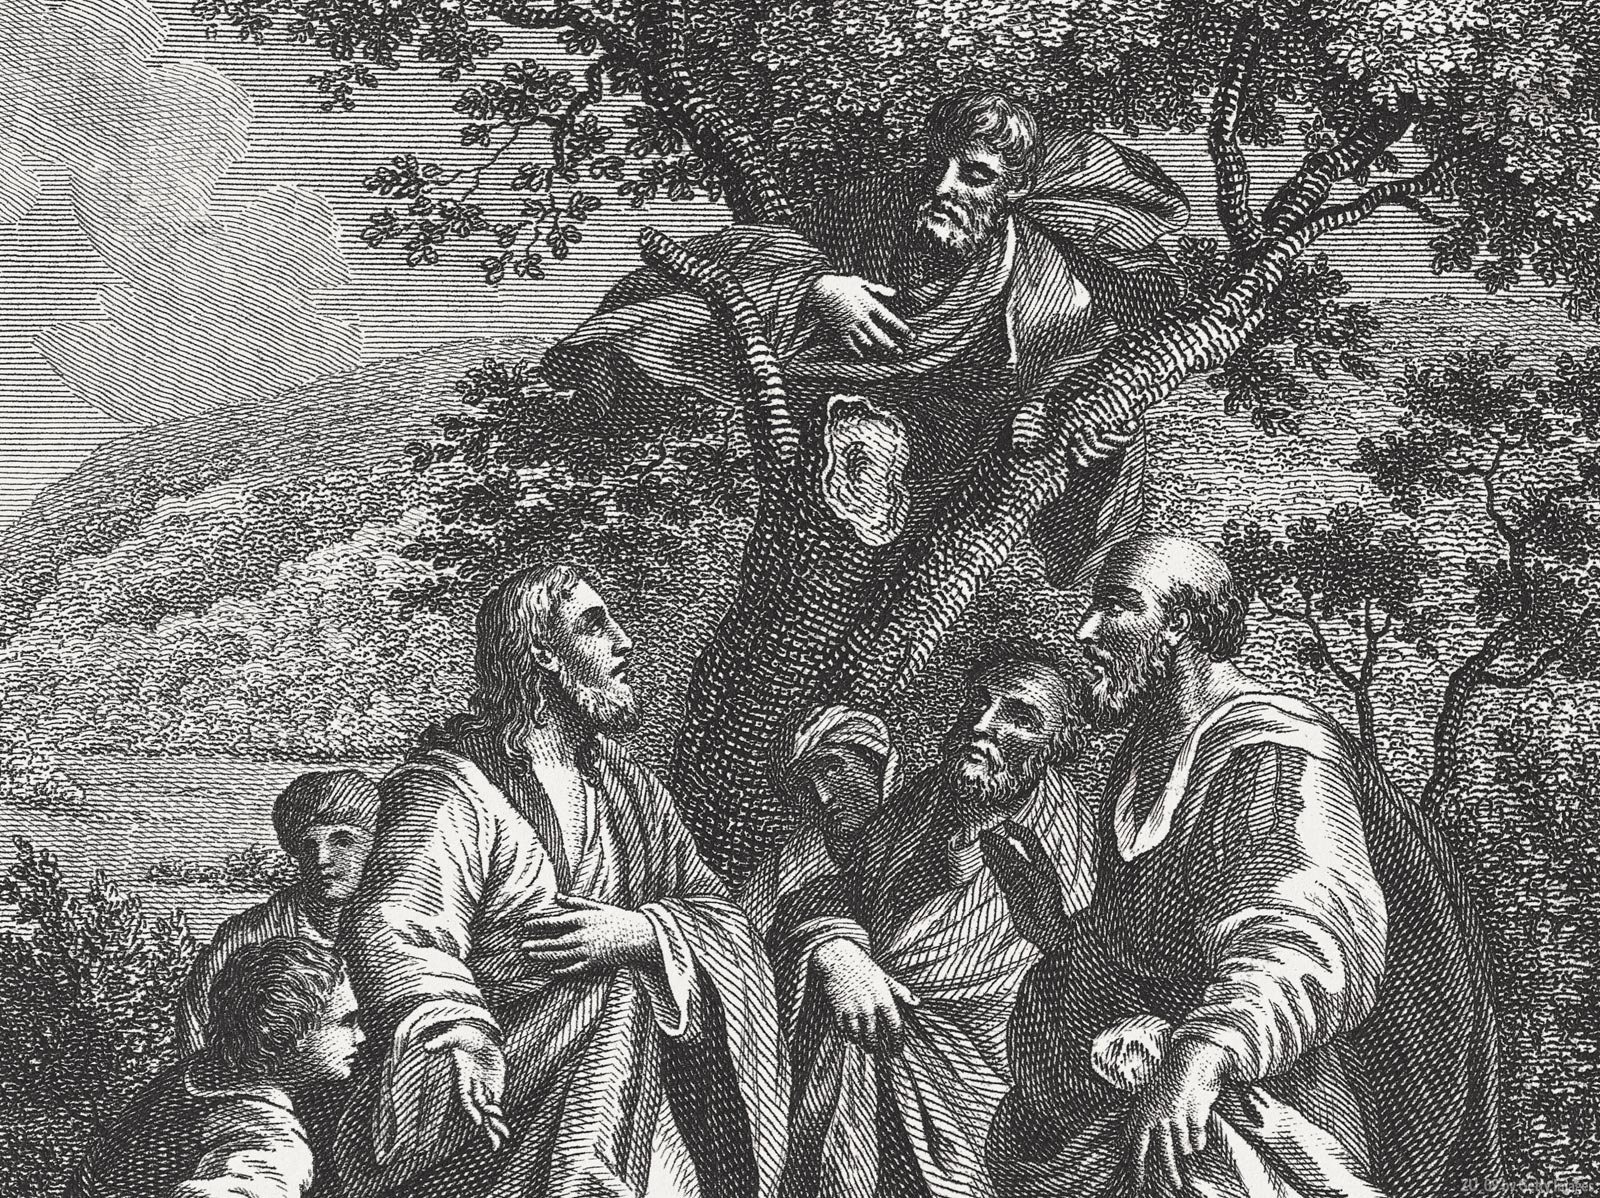 Uma breve reflexão do encontro de Zaqueu com Jesus